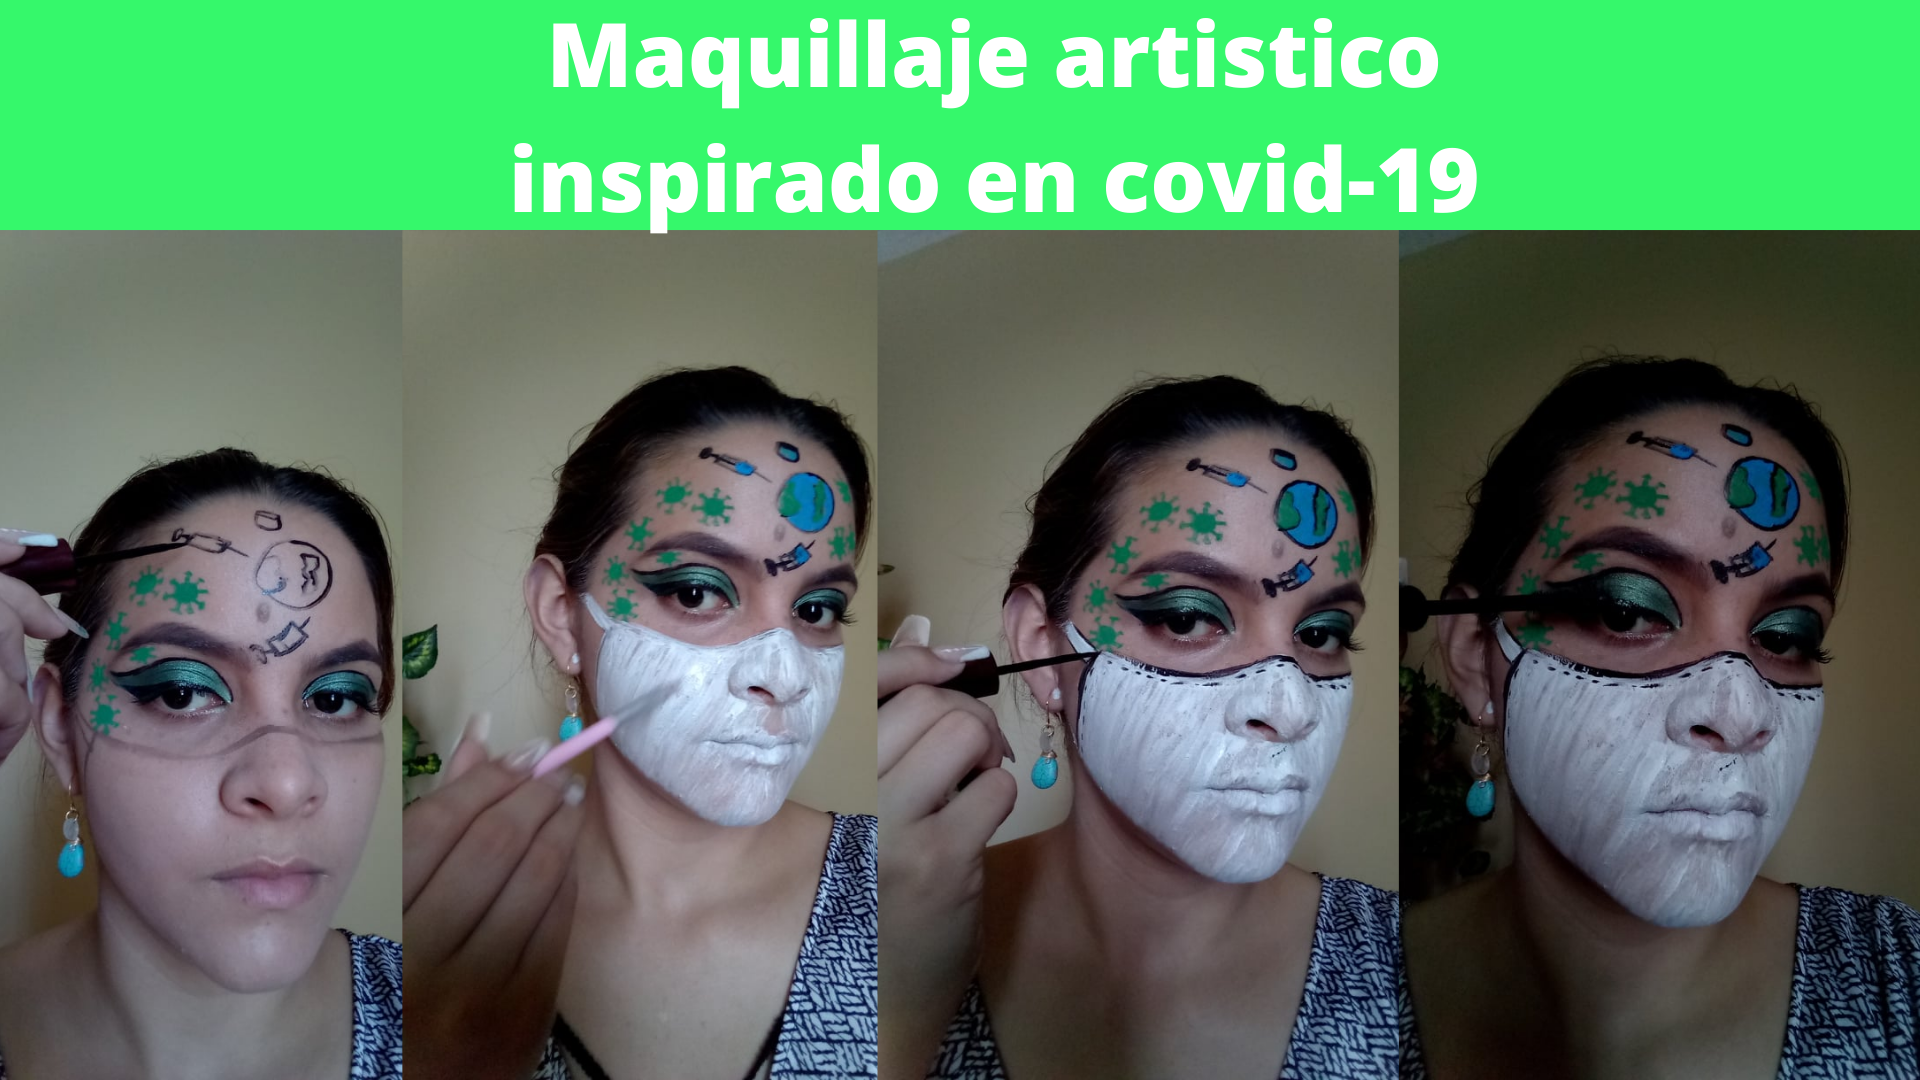 Maquillaje artistico inspirado en covid-19 (3).png